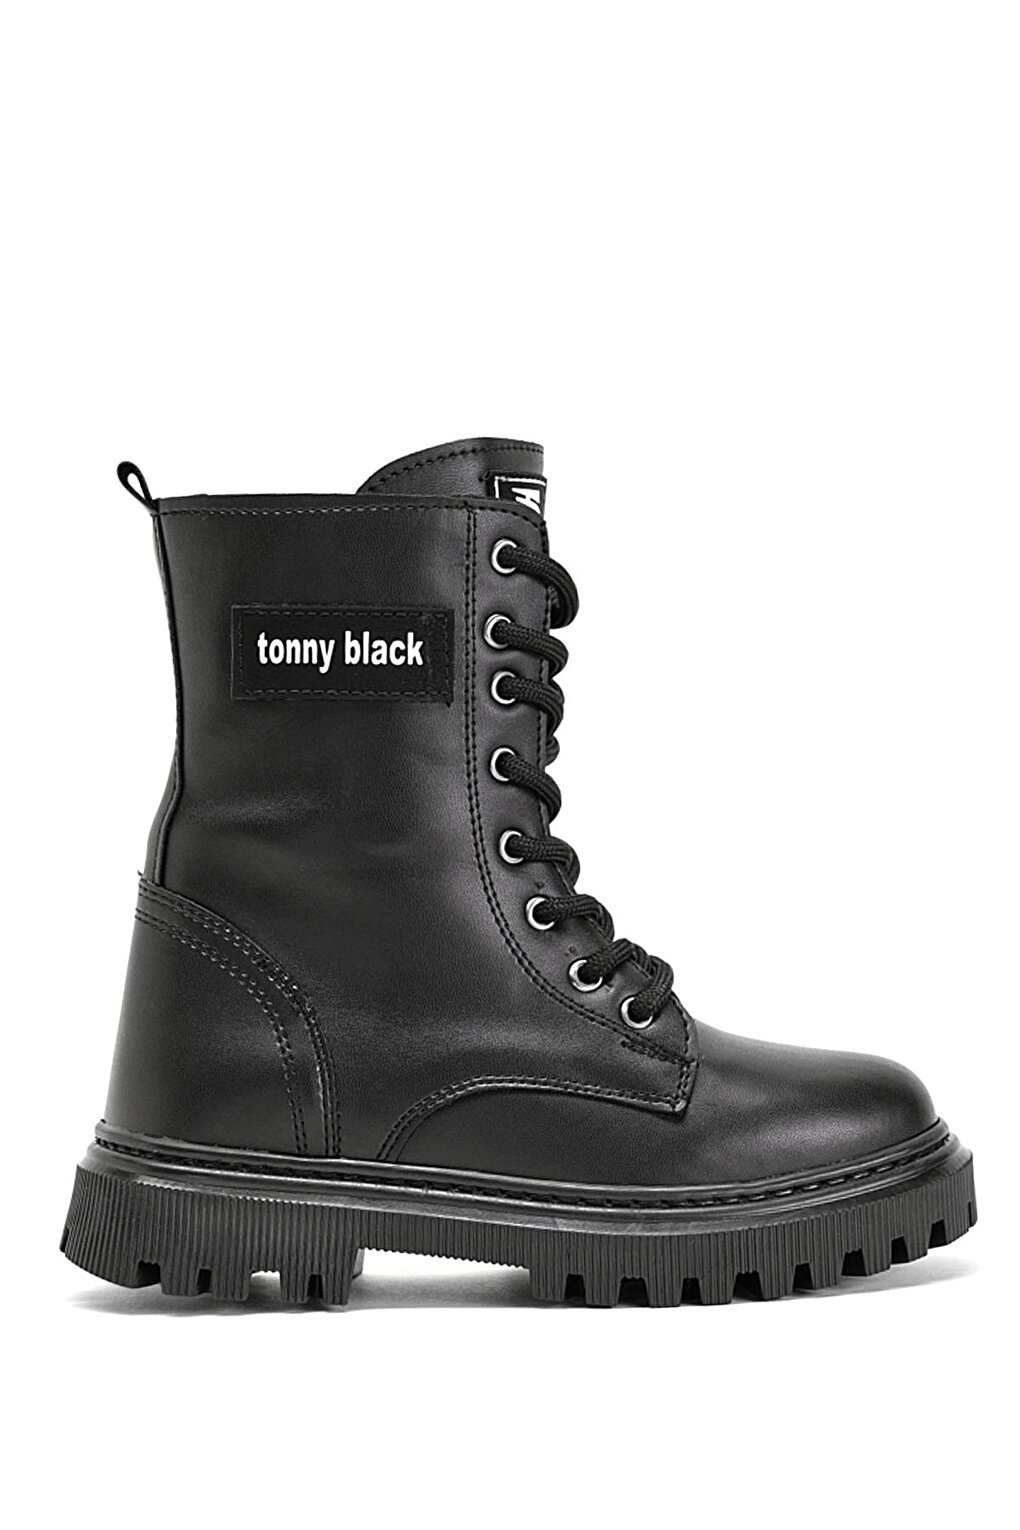 цена Черные кожаные длинные сапоги для девочек со шнуровкой спереди на термоподошве TONNY BLACK